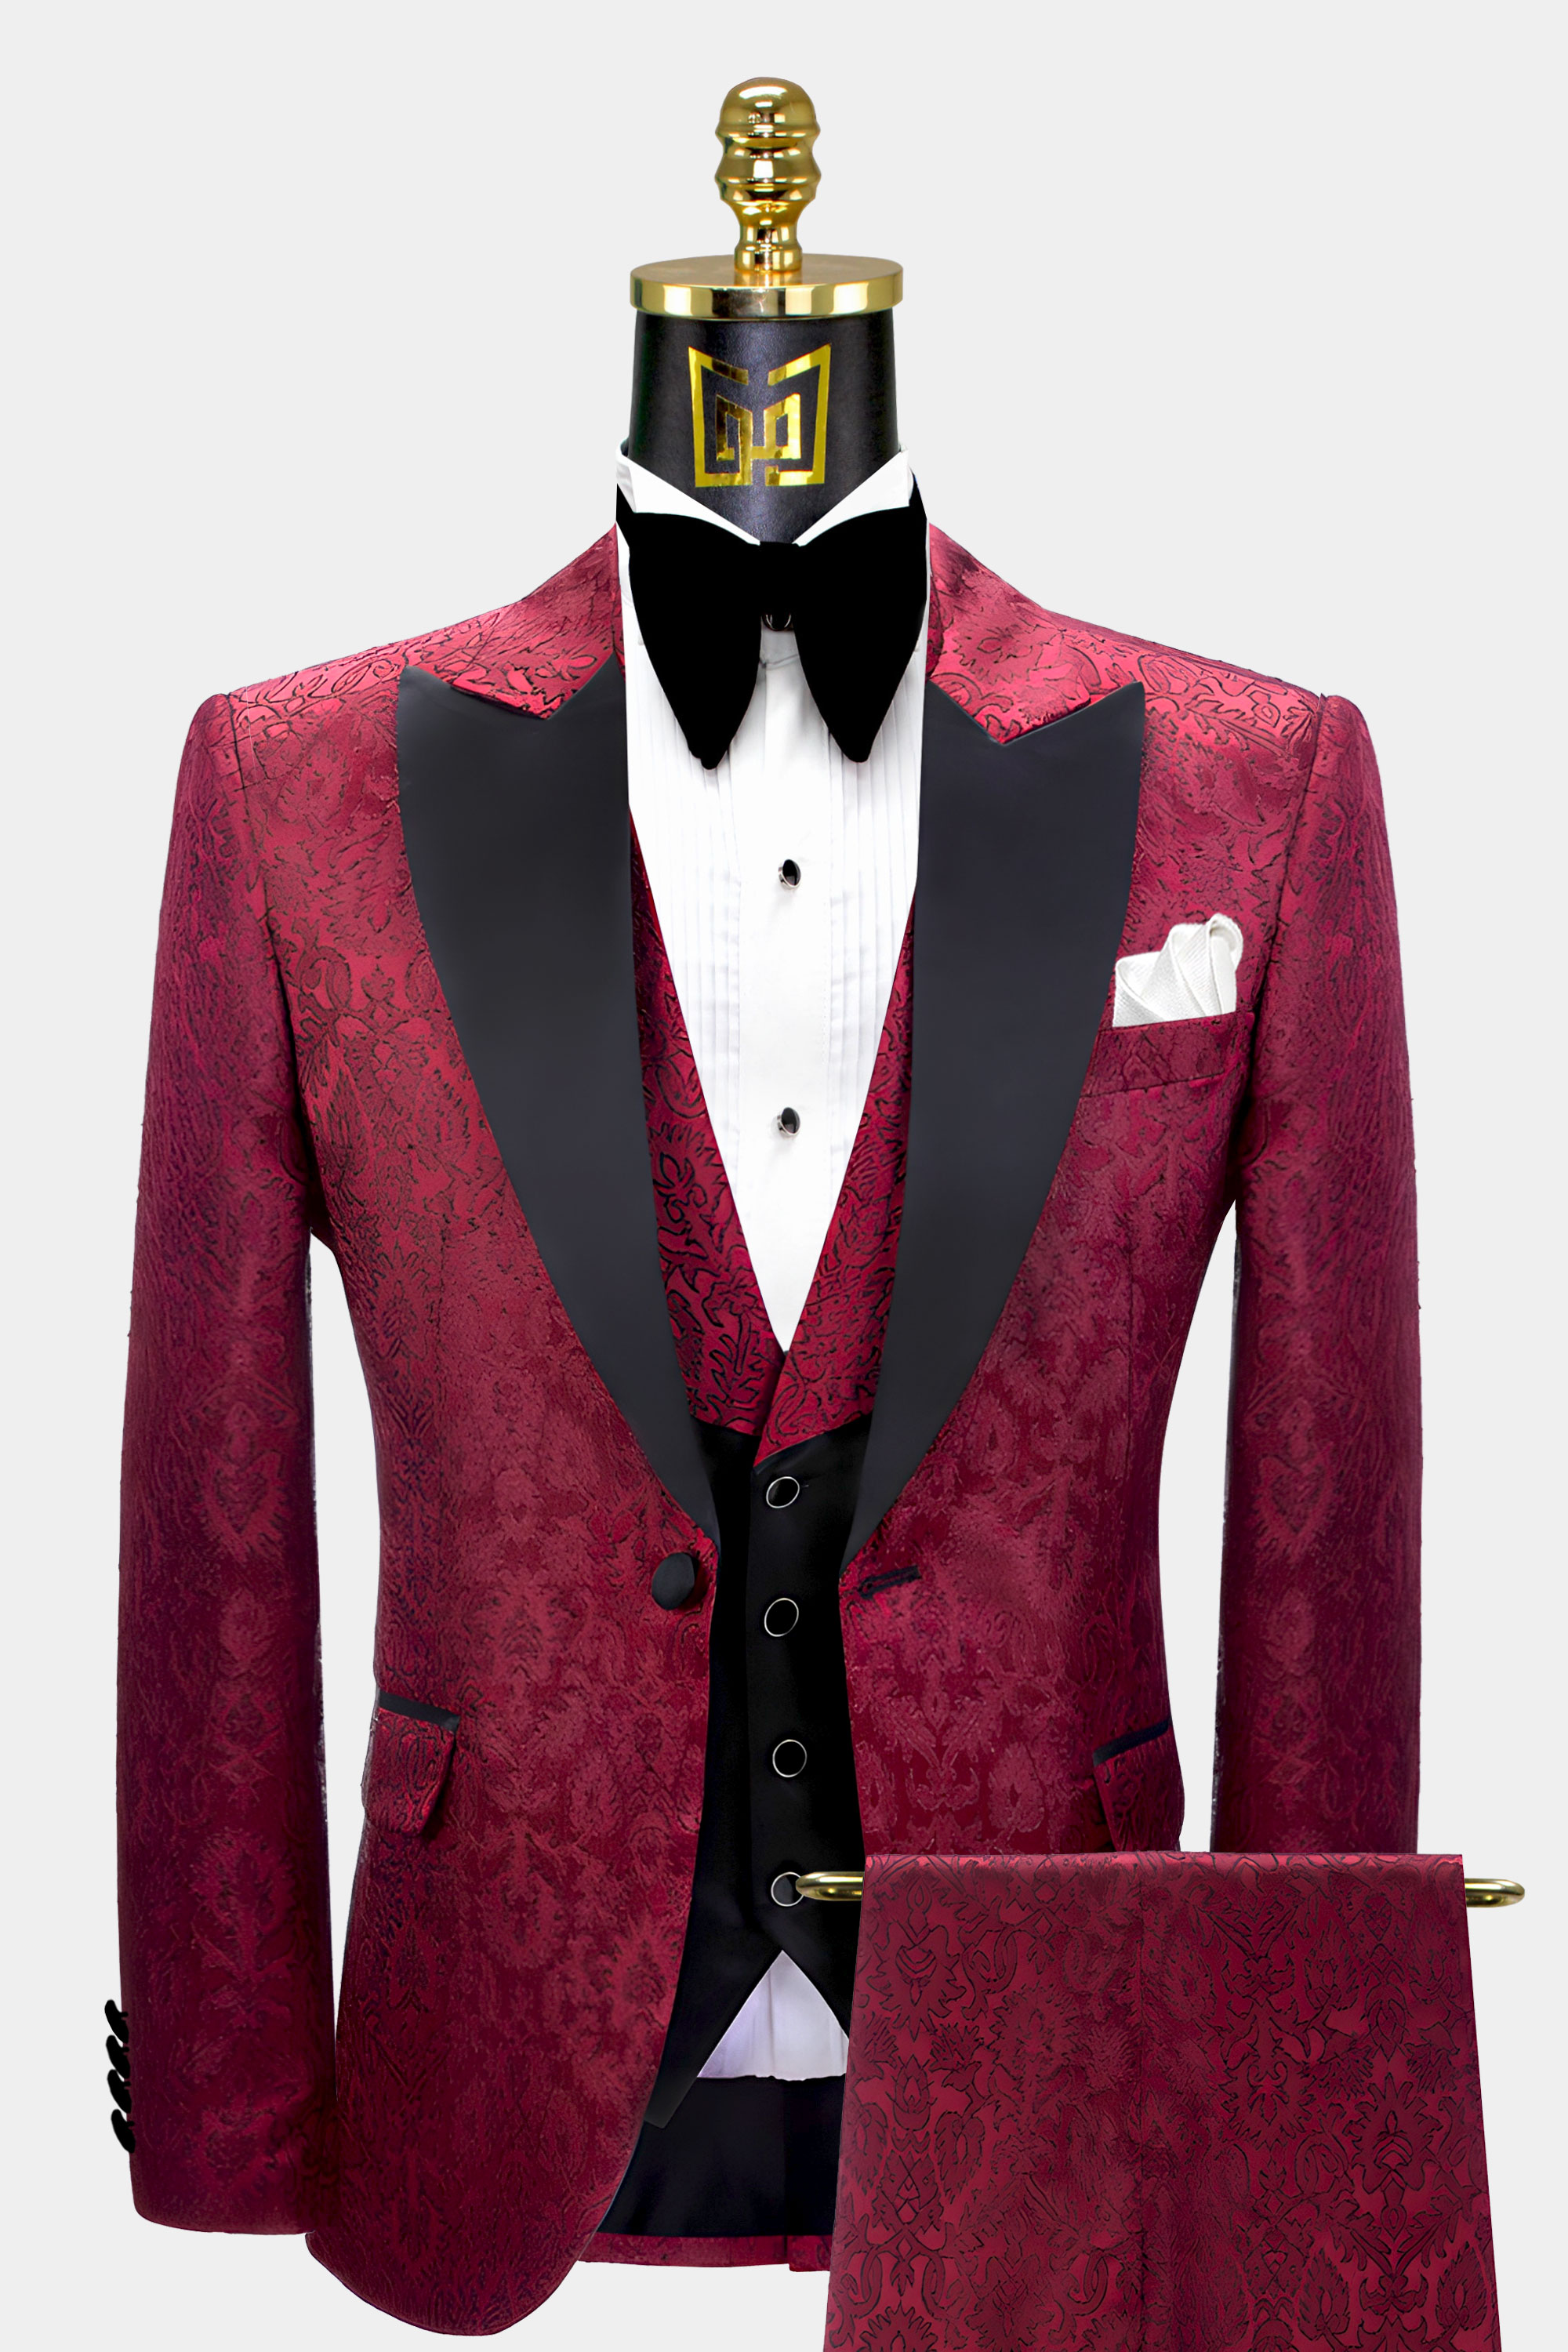 Maroon-Tuxedo-Suit-Groom-Wedding-Prom-Suit-For-Men-from-Gentlemansguru.Com